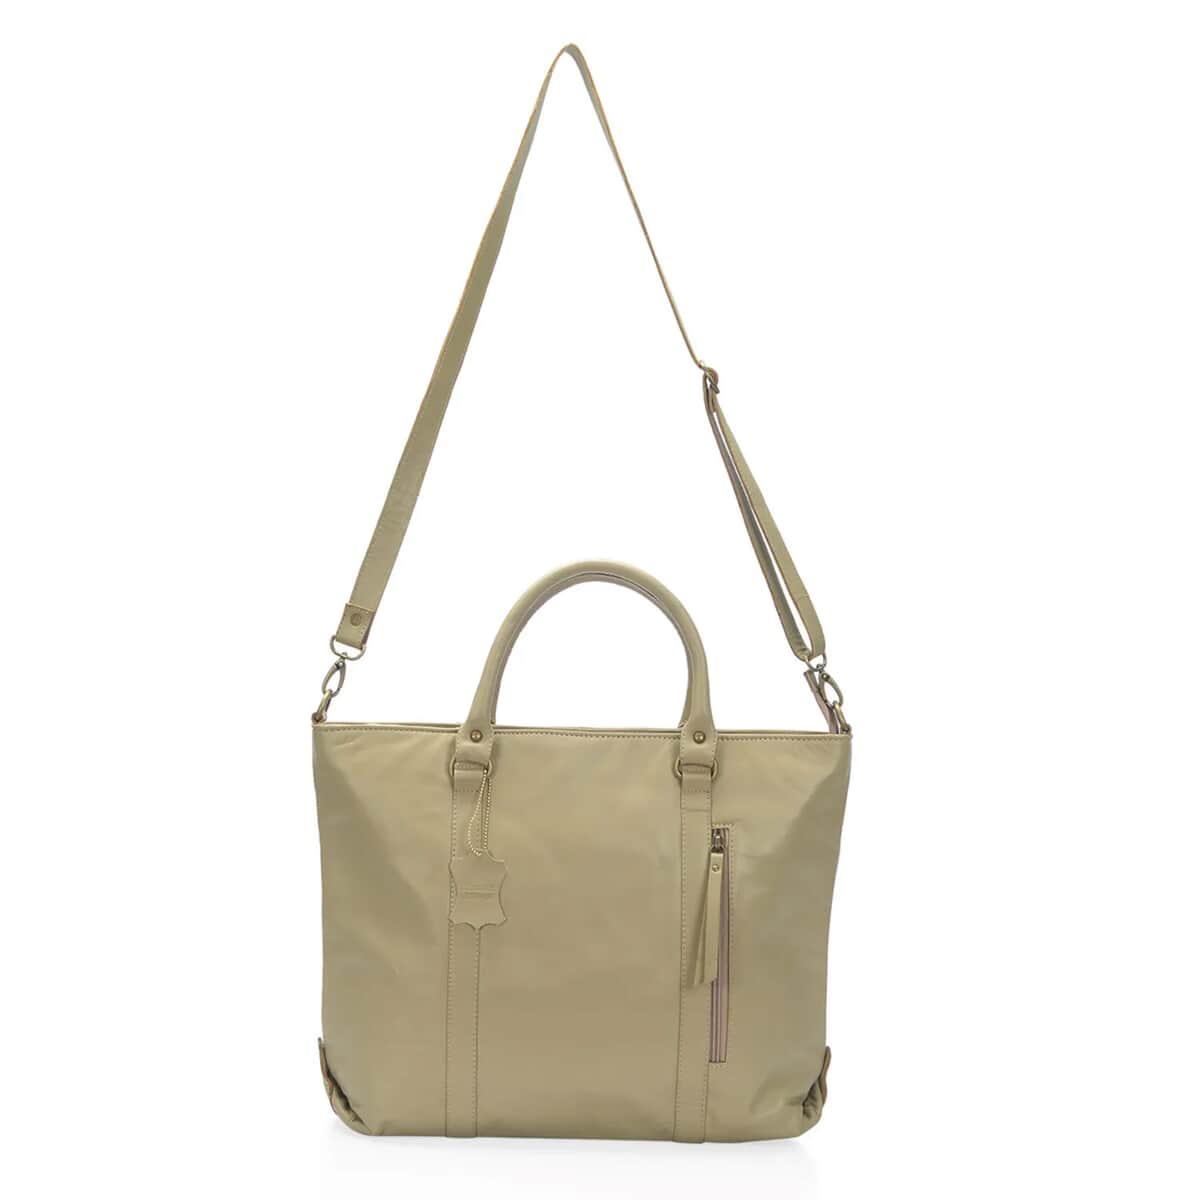 Sand Leather Handbag with Detachable Shoulder Strap image number 0